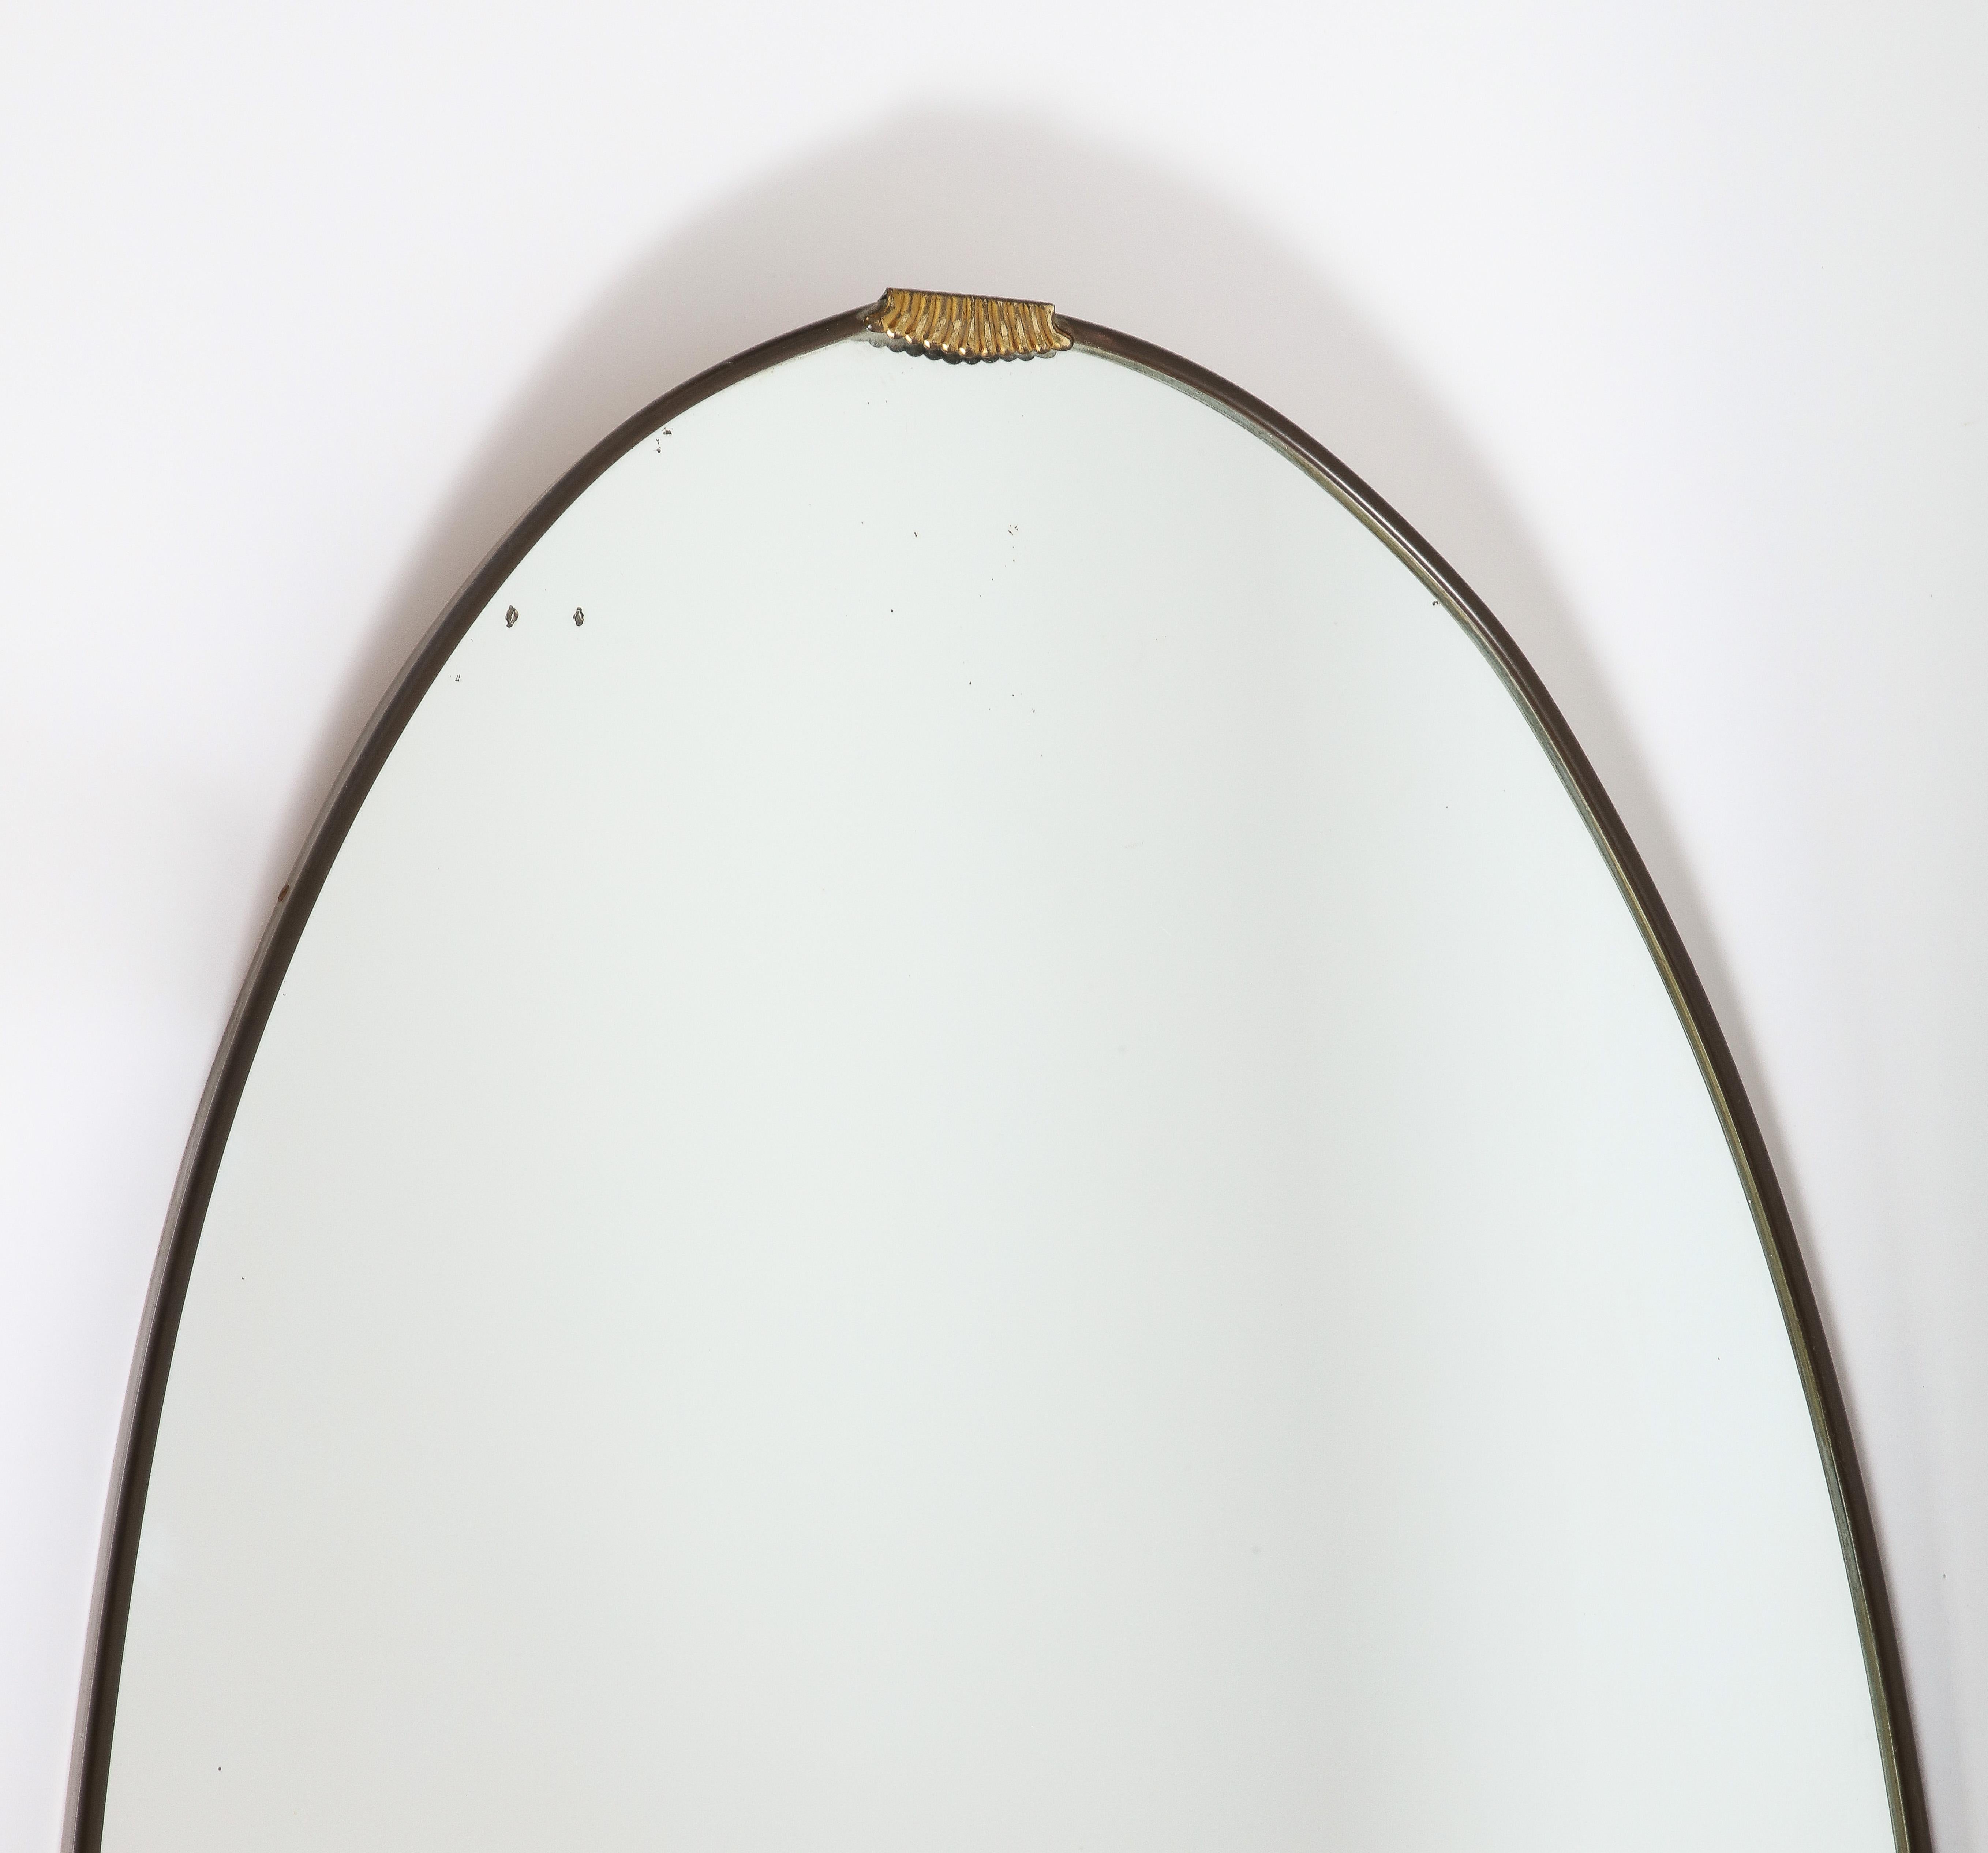 Miroir italien des années 1940, de grande taille, oblong ou ovale, en laiton, avec un magnifique décor de volutes en laiton sur la partie médiane de la partie supérieure.  Le laiton a sa patine d'origine et peut être nettoyé pour une finition plus